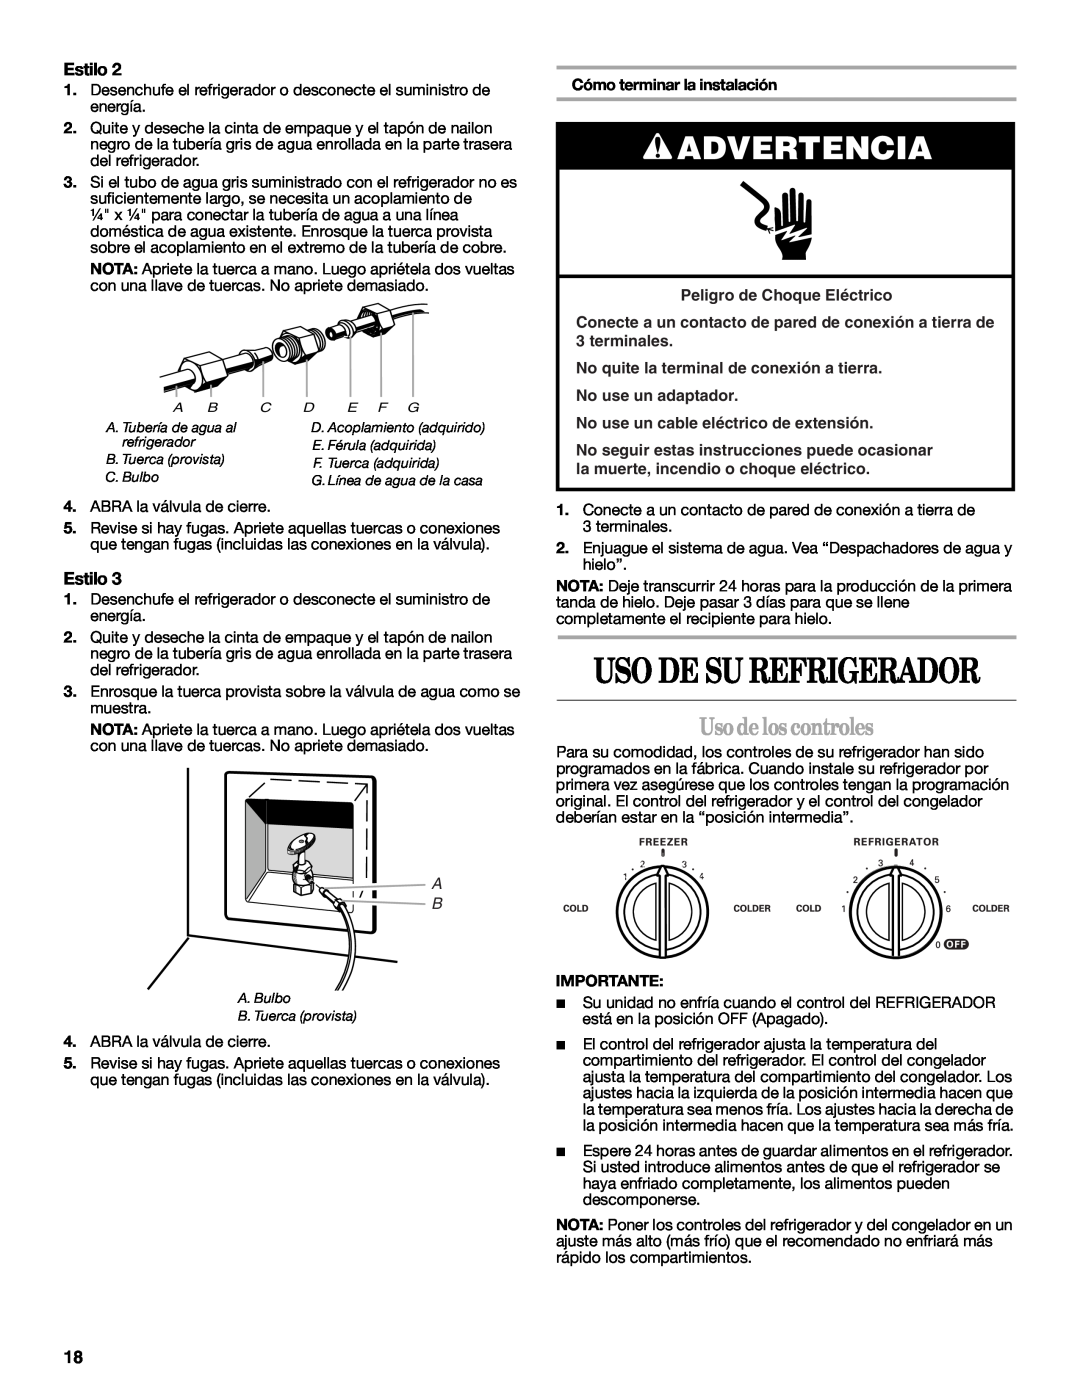 Whirlpool ED2VHGXMQ10 Usodelos controles, Cómo terminar la instalación, Uso De Su Refrigerador, Advertencia, Estilo 